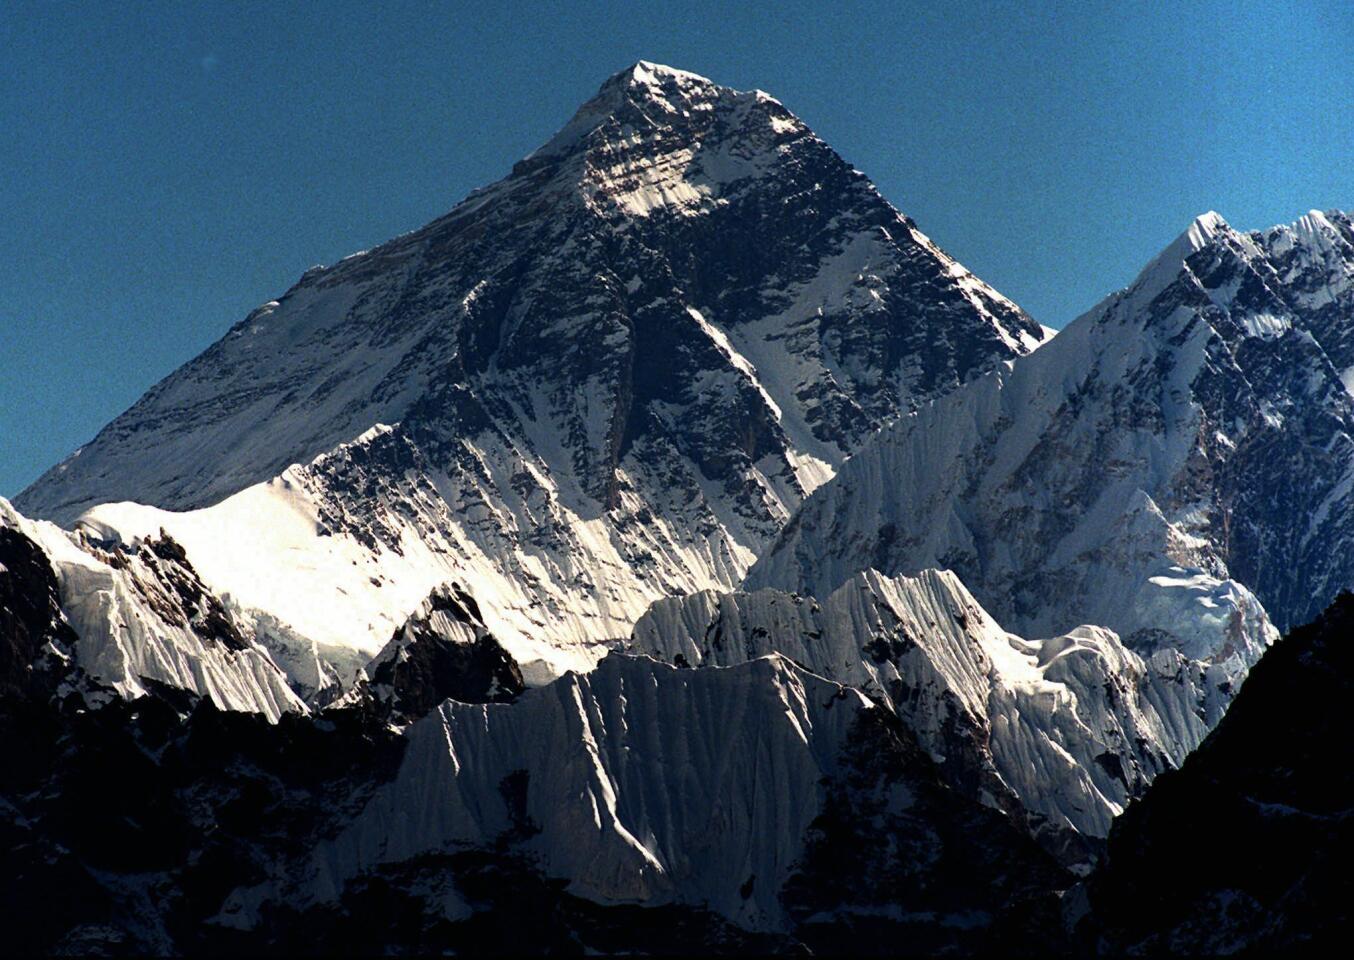 Mount Everest is seen from peak Gokyo Ri in Nepal in 1996.